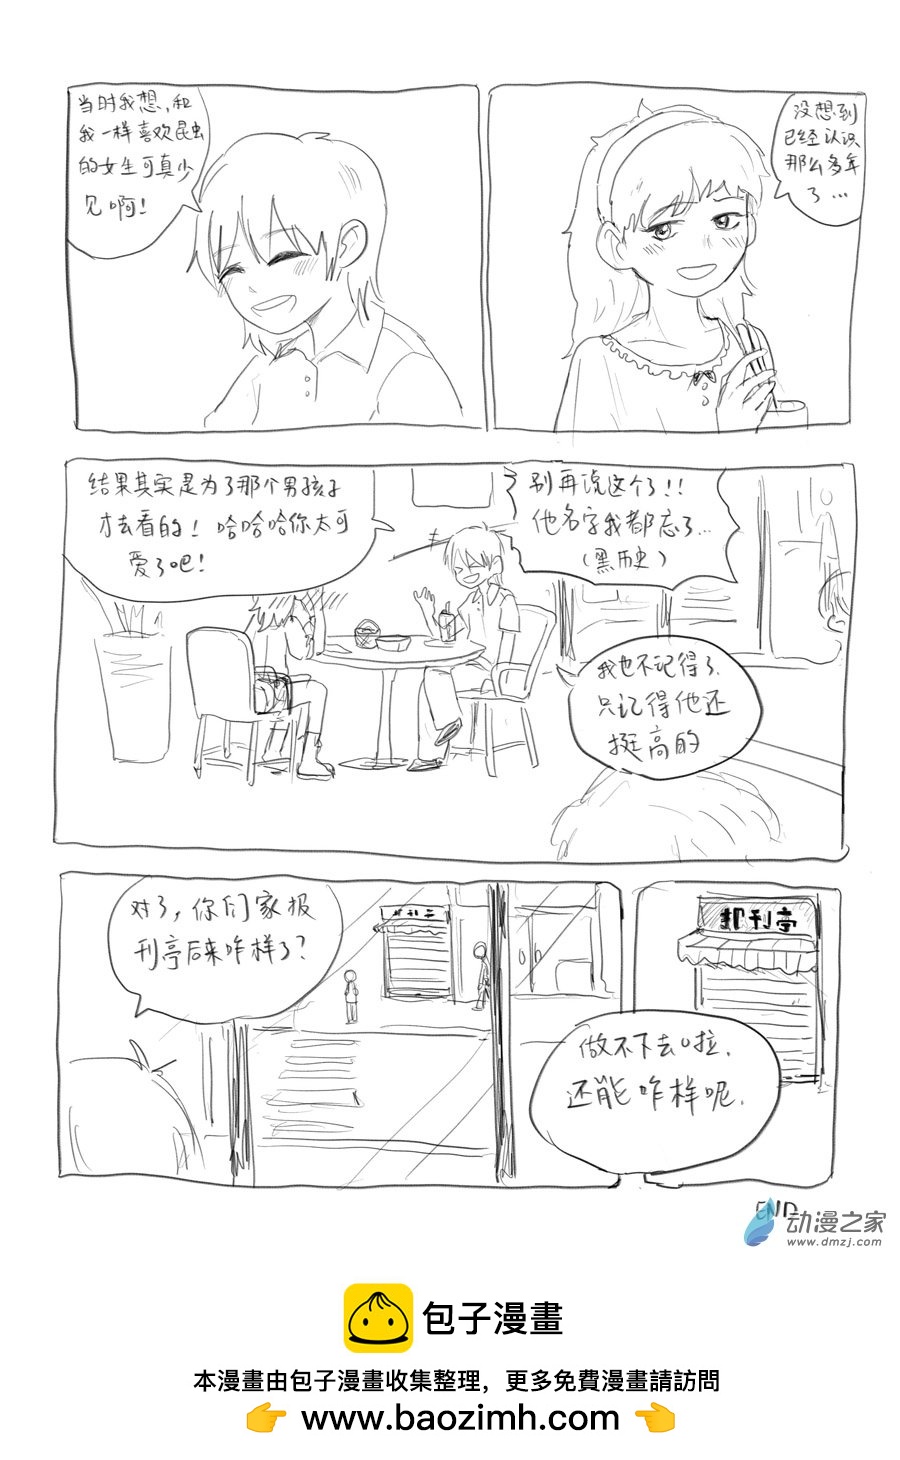 我鳥的不連載漫畫組活動漫畫 - 05 報刊亭 - 2